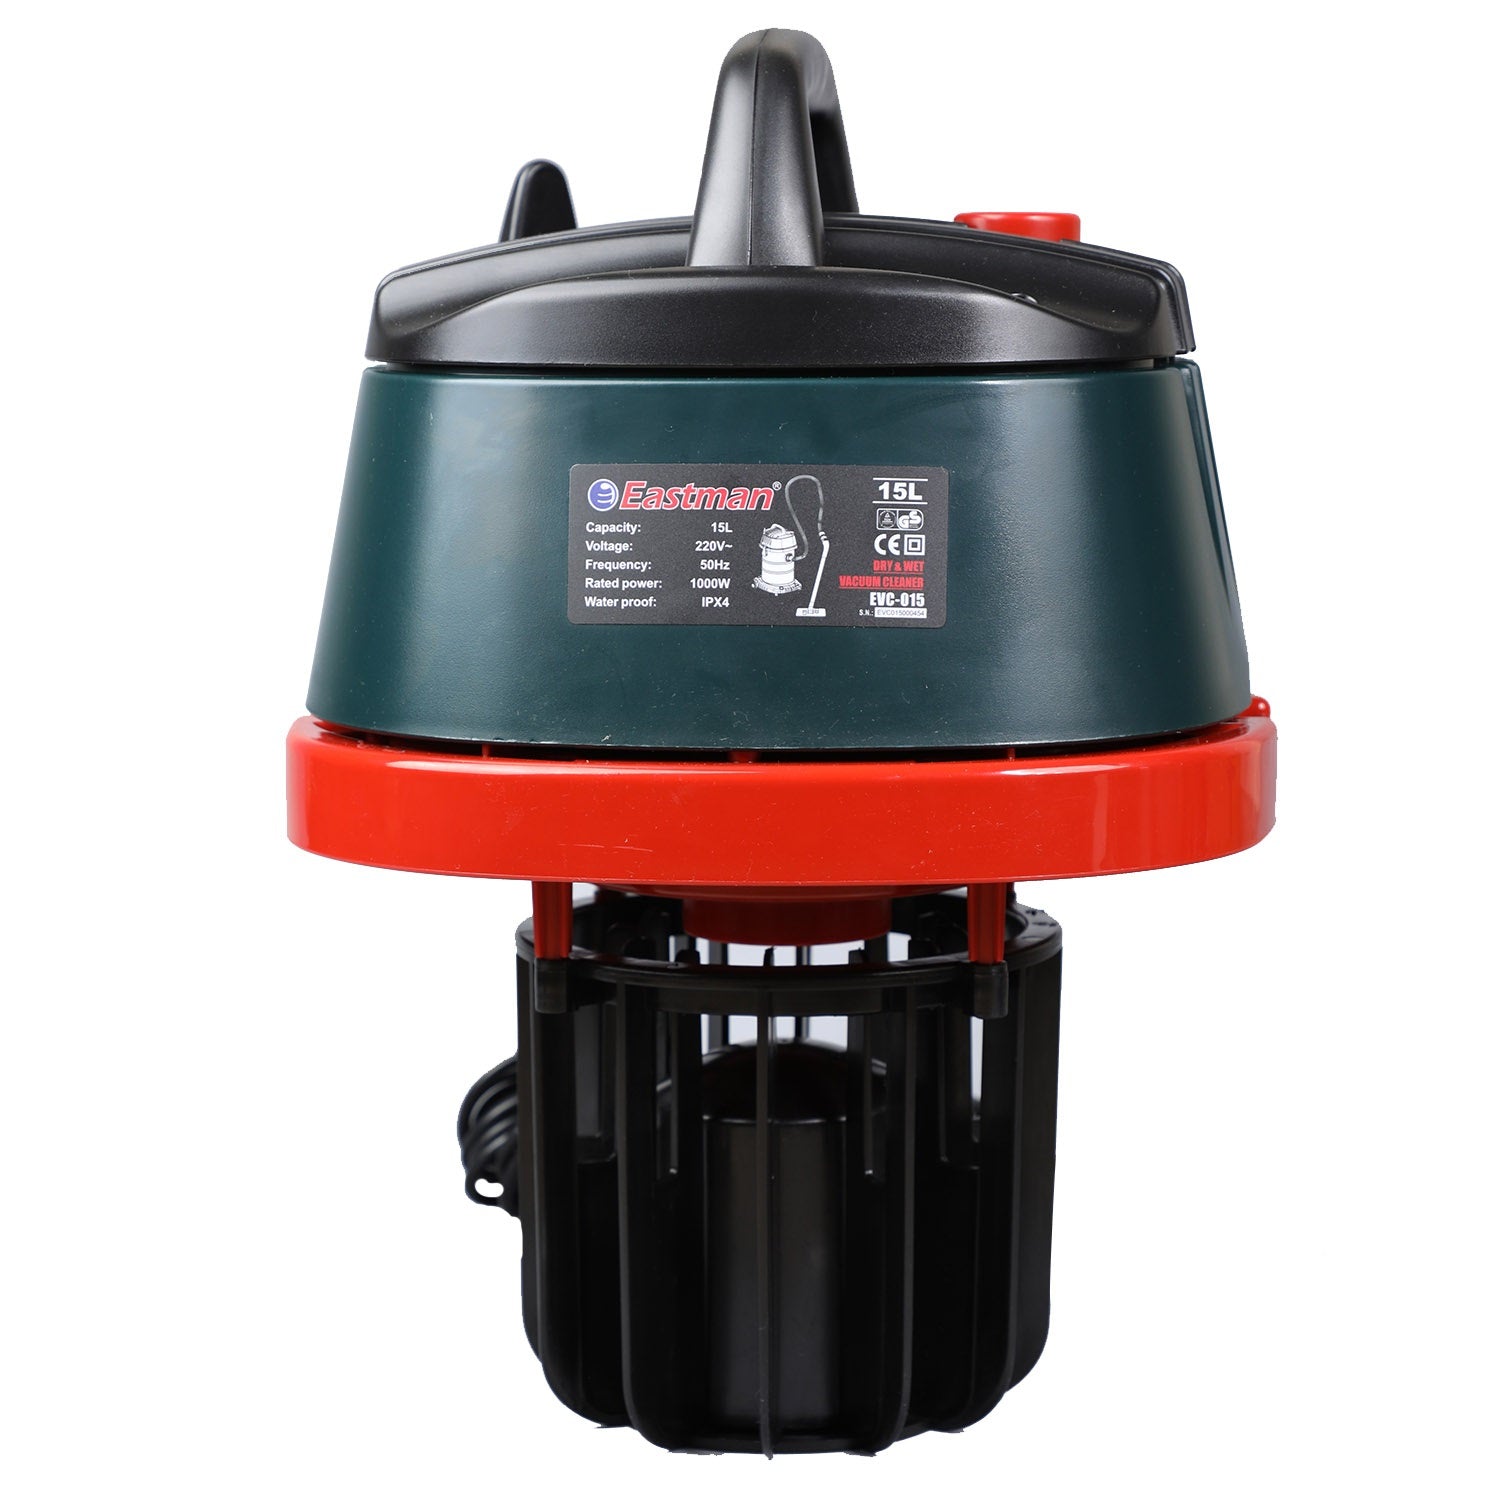 Eastman Industrial Vacuum Cleaner 15L 1000W EVC-015